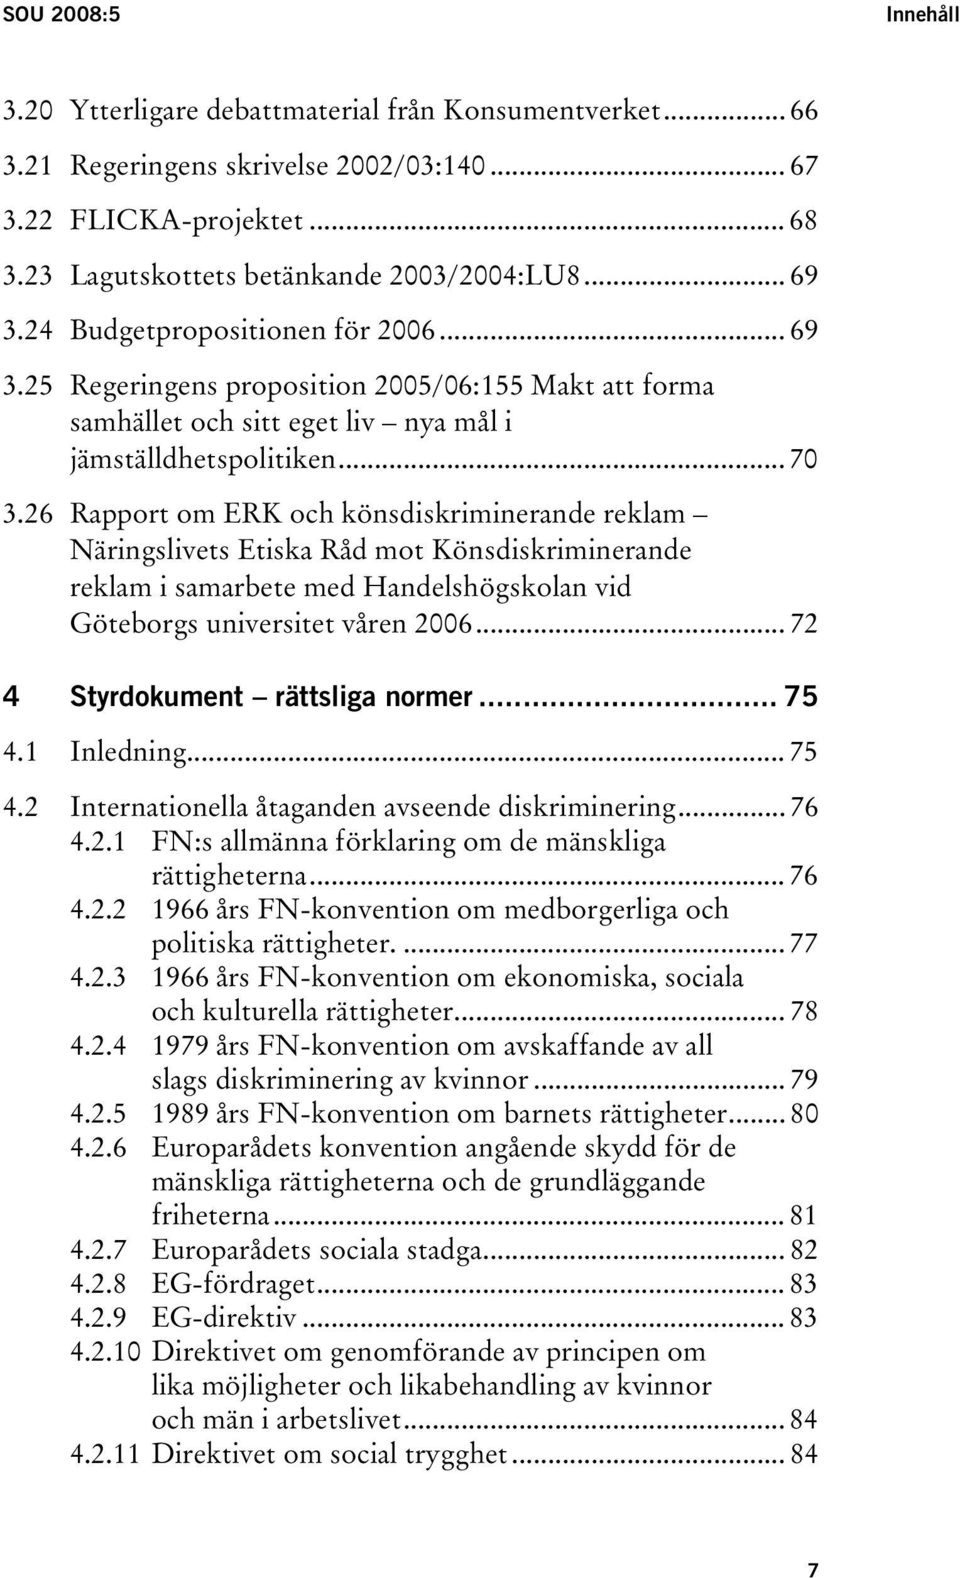 26 Rapport om ERK och könsdiskriminerande reklam Näringslivets Etiska Råd mot Könsdiskriminerande reklam i samarbete med Handelshögskolan vid Göteborgs universitet våren 2006.